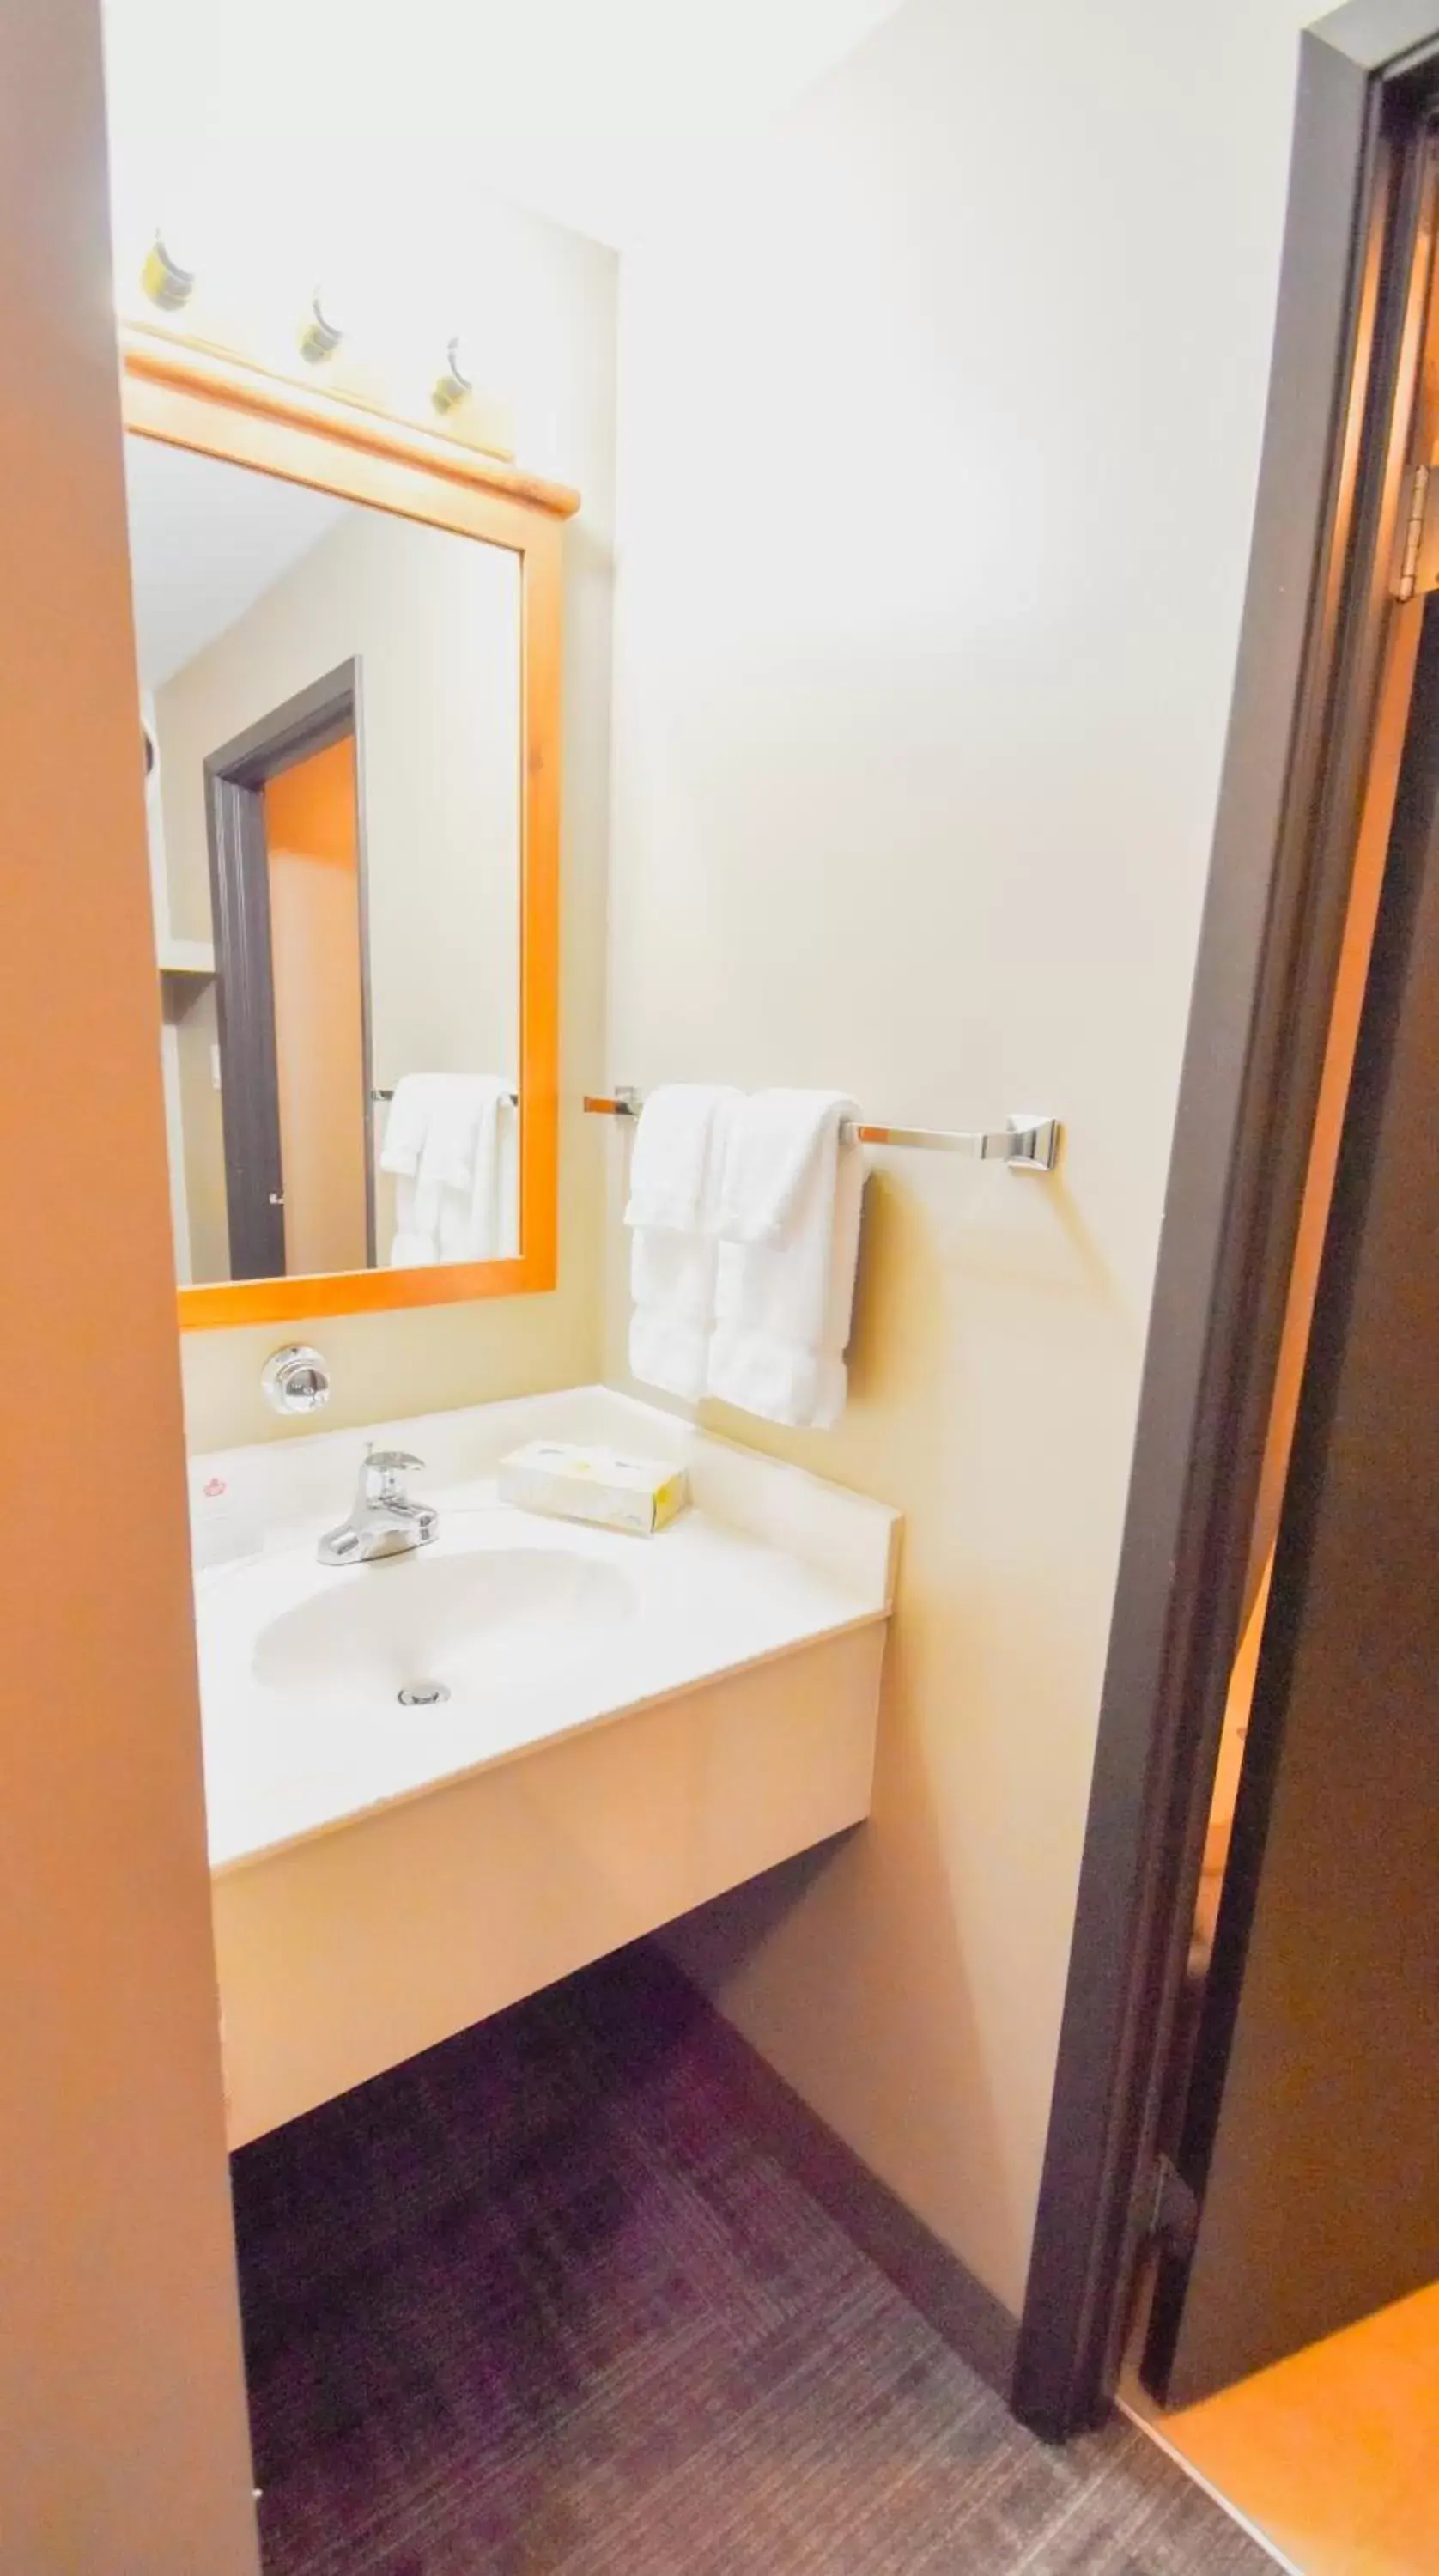 Bathroom in Canad Inns Destination Centre Portage la Prairie